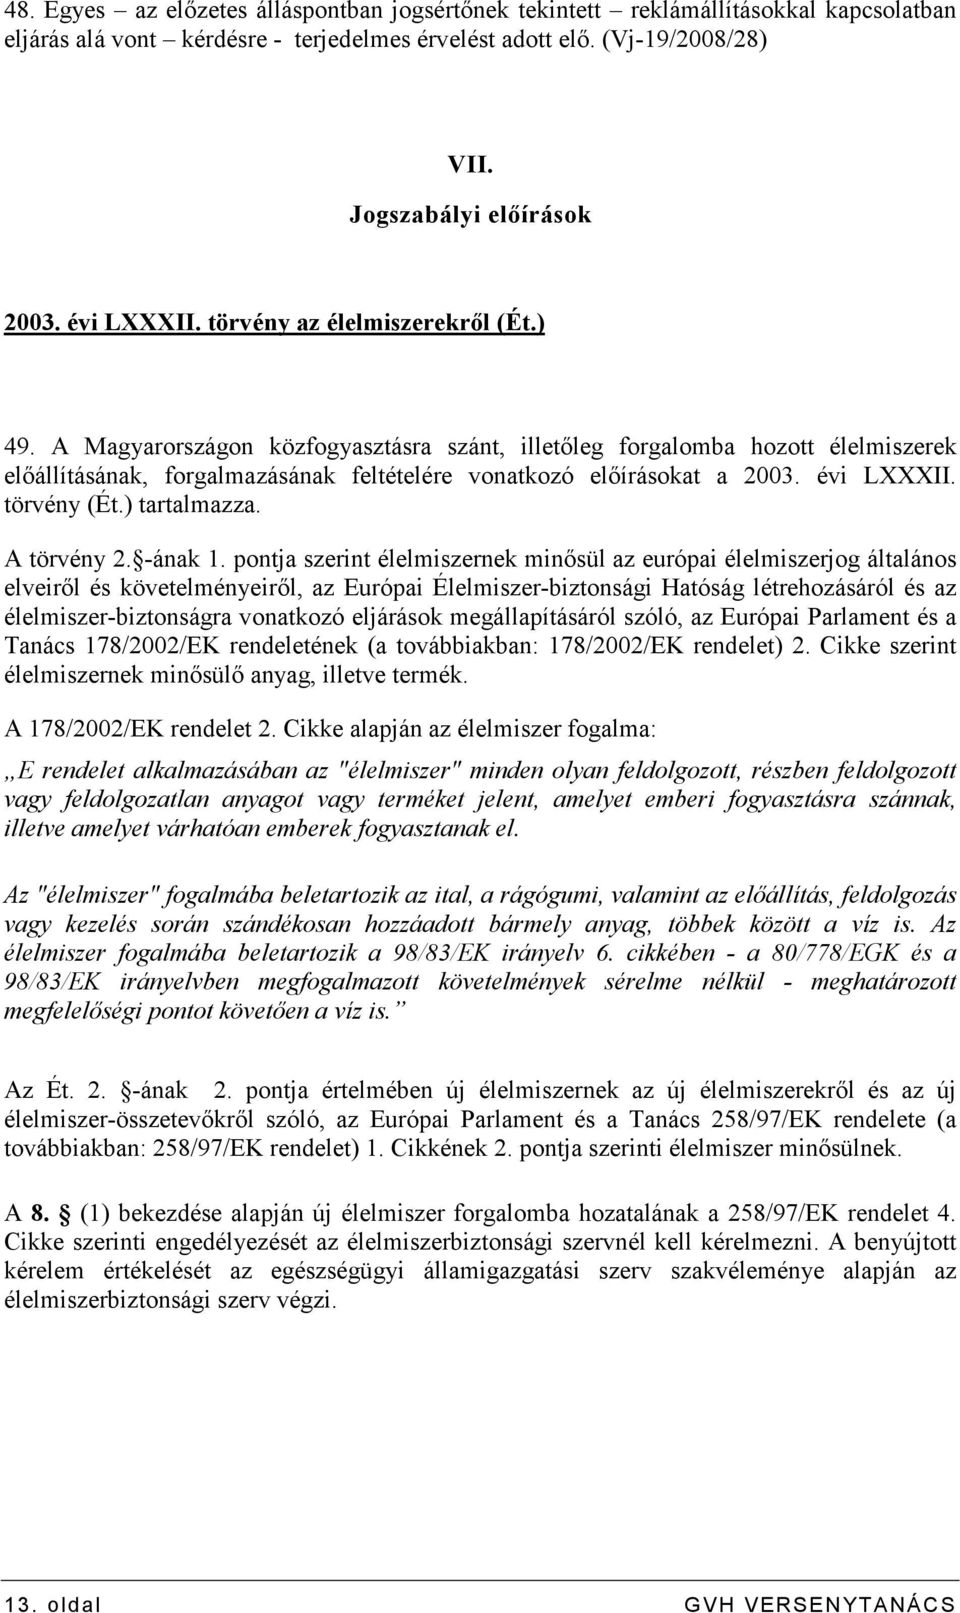 A Magyarországon közfogyasztásra szánt, illetıleg forgalomba hozott élelmiszerek elıállításának, forgalmazásának feltételére vonatkozó elıírásokat a 2003. évi LXXXII. törvény (Ét.) tartalmazza.